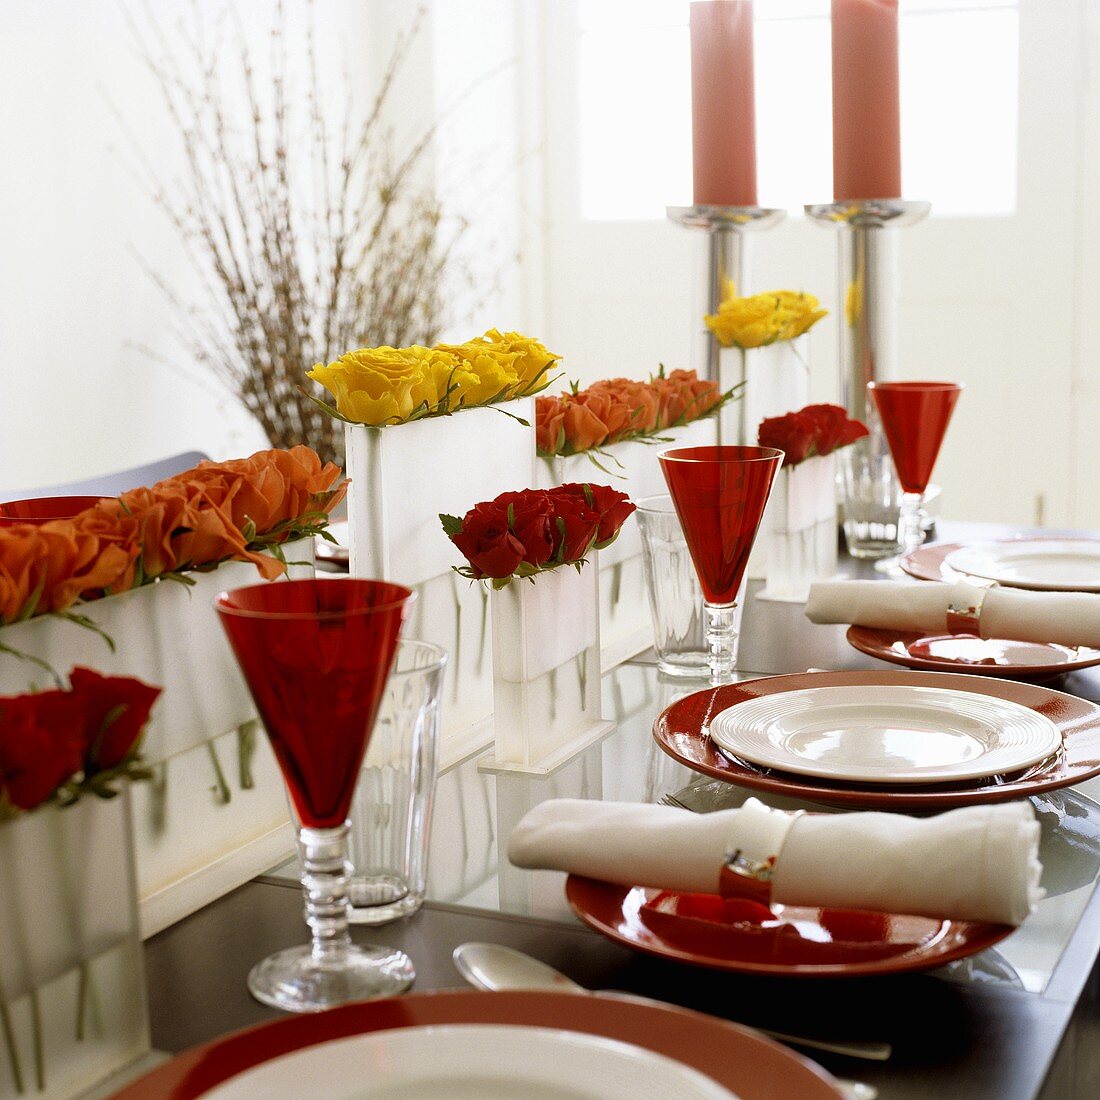 Tischinszenierung - Gedecke in Rot und Weiß mit farbigen Stielgläsern und Rosen in Vase